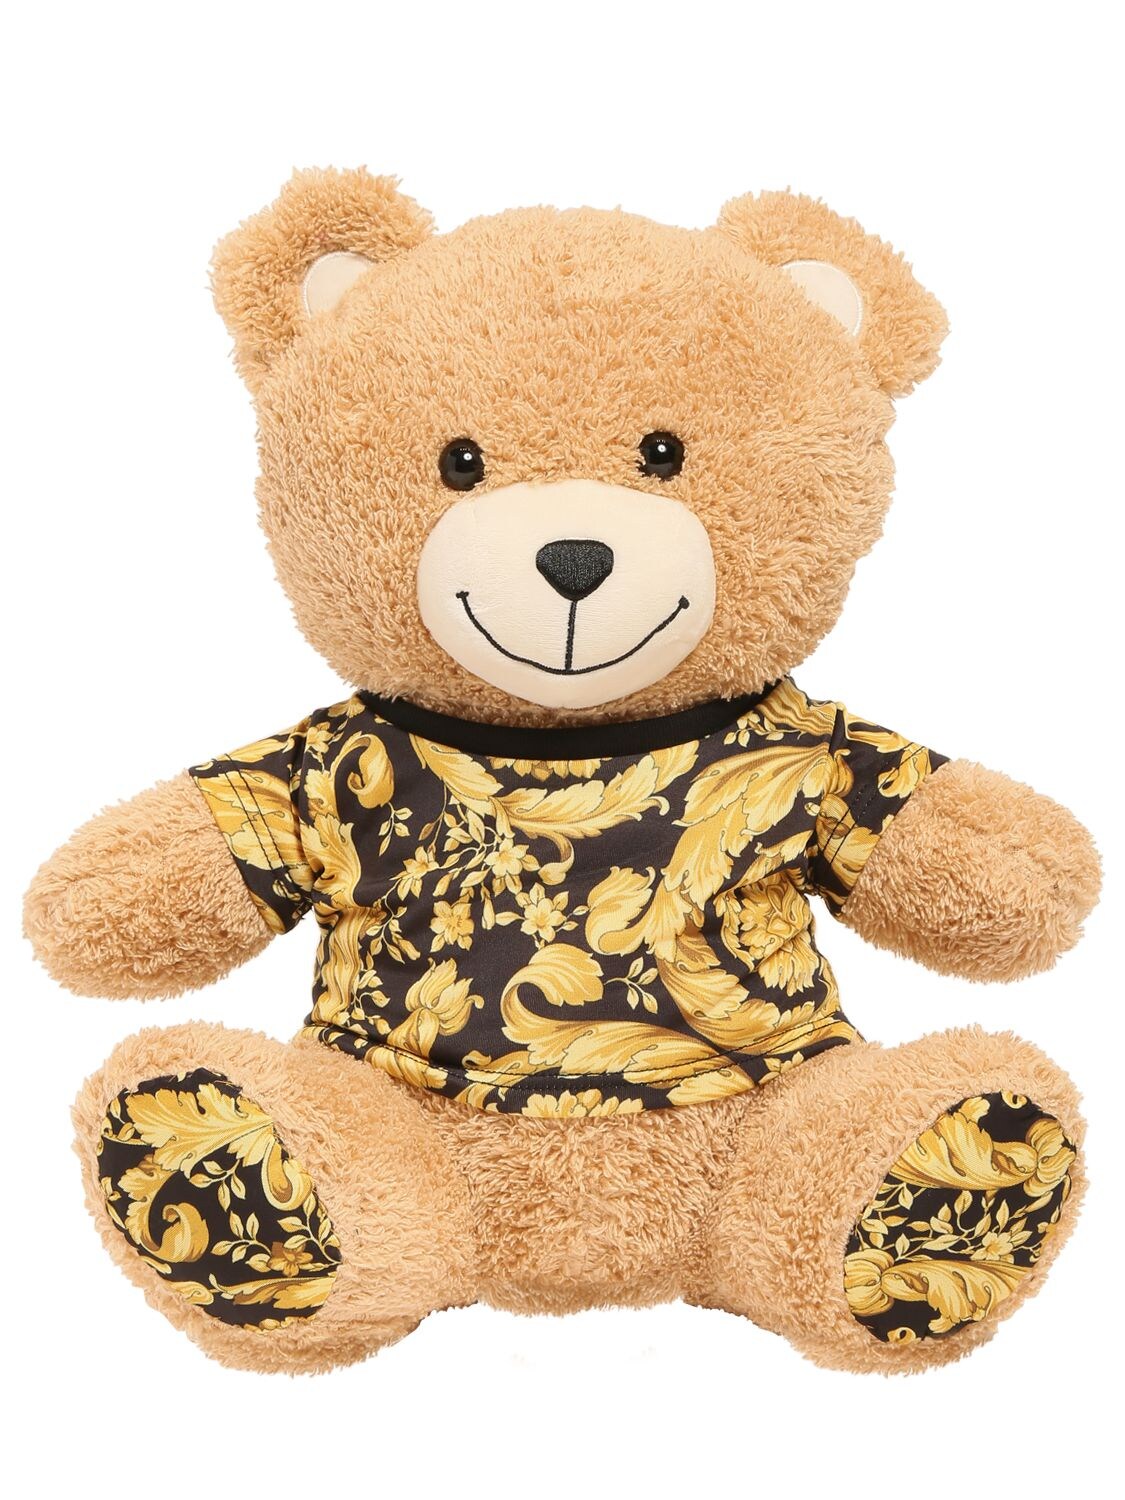 Teddy Bear W/ Baroque Printed Details